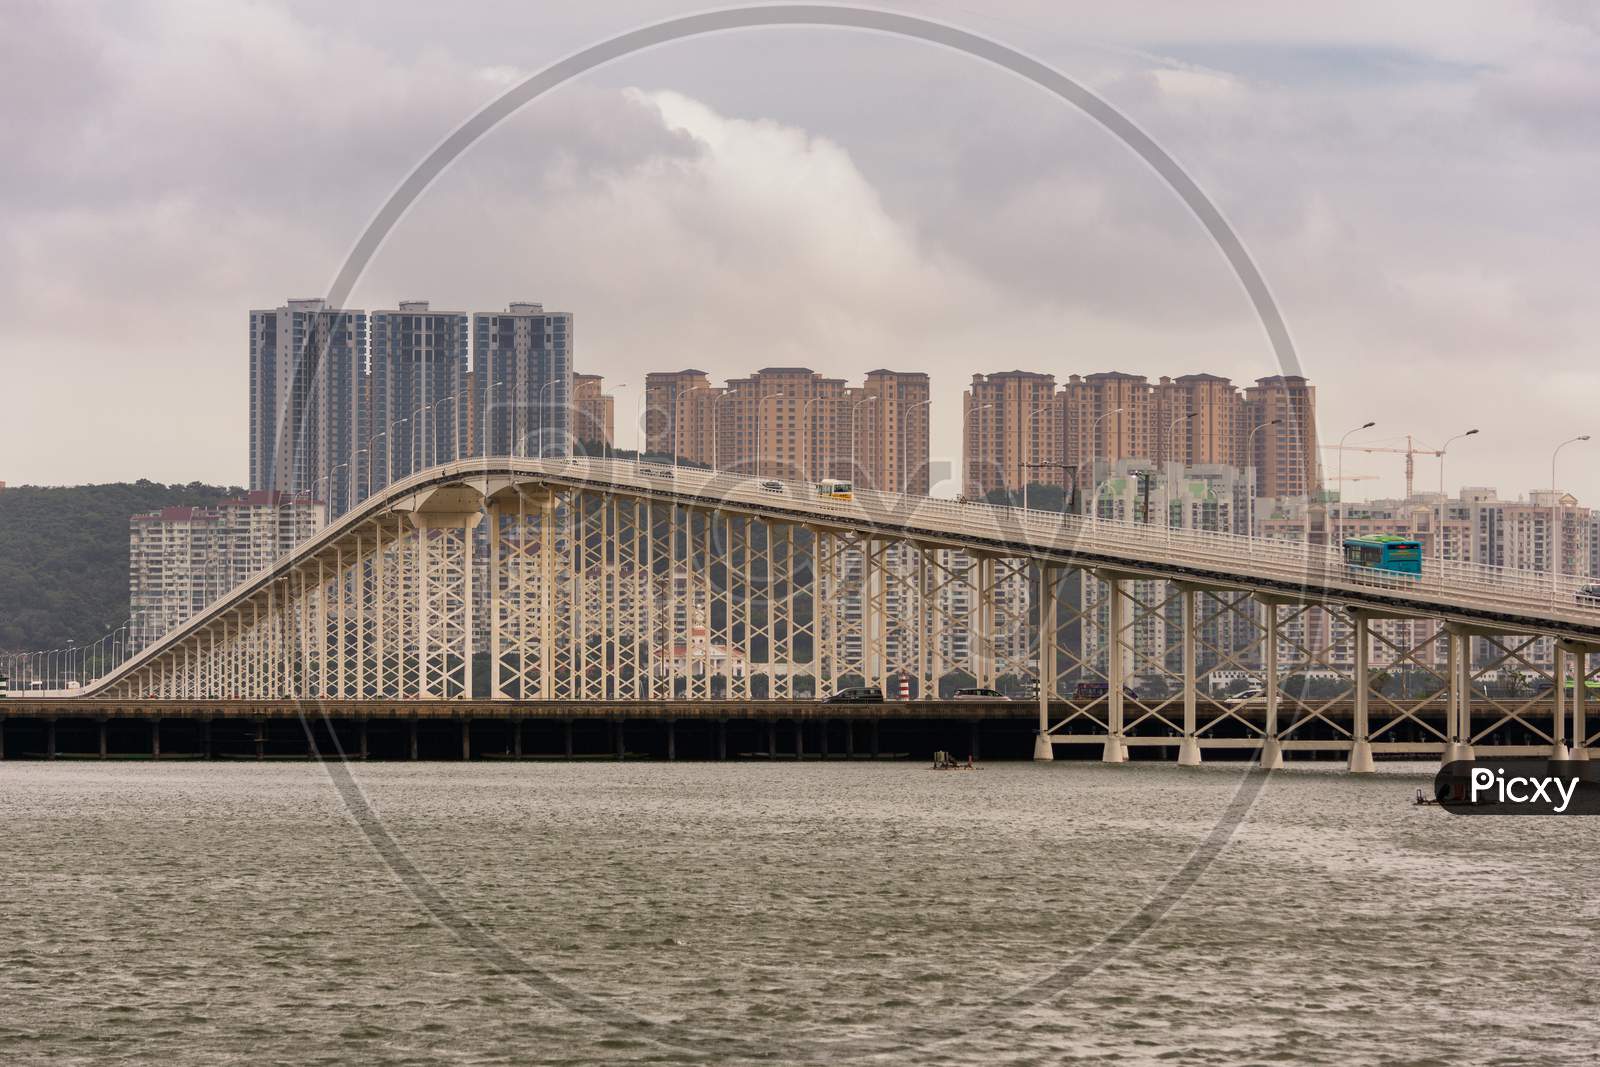 Hong Kong–Zhuhai–Macau Bridge In Macau, China